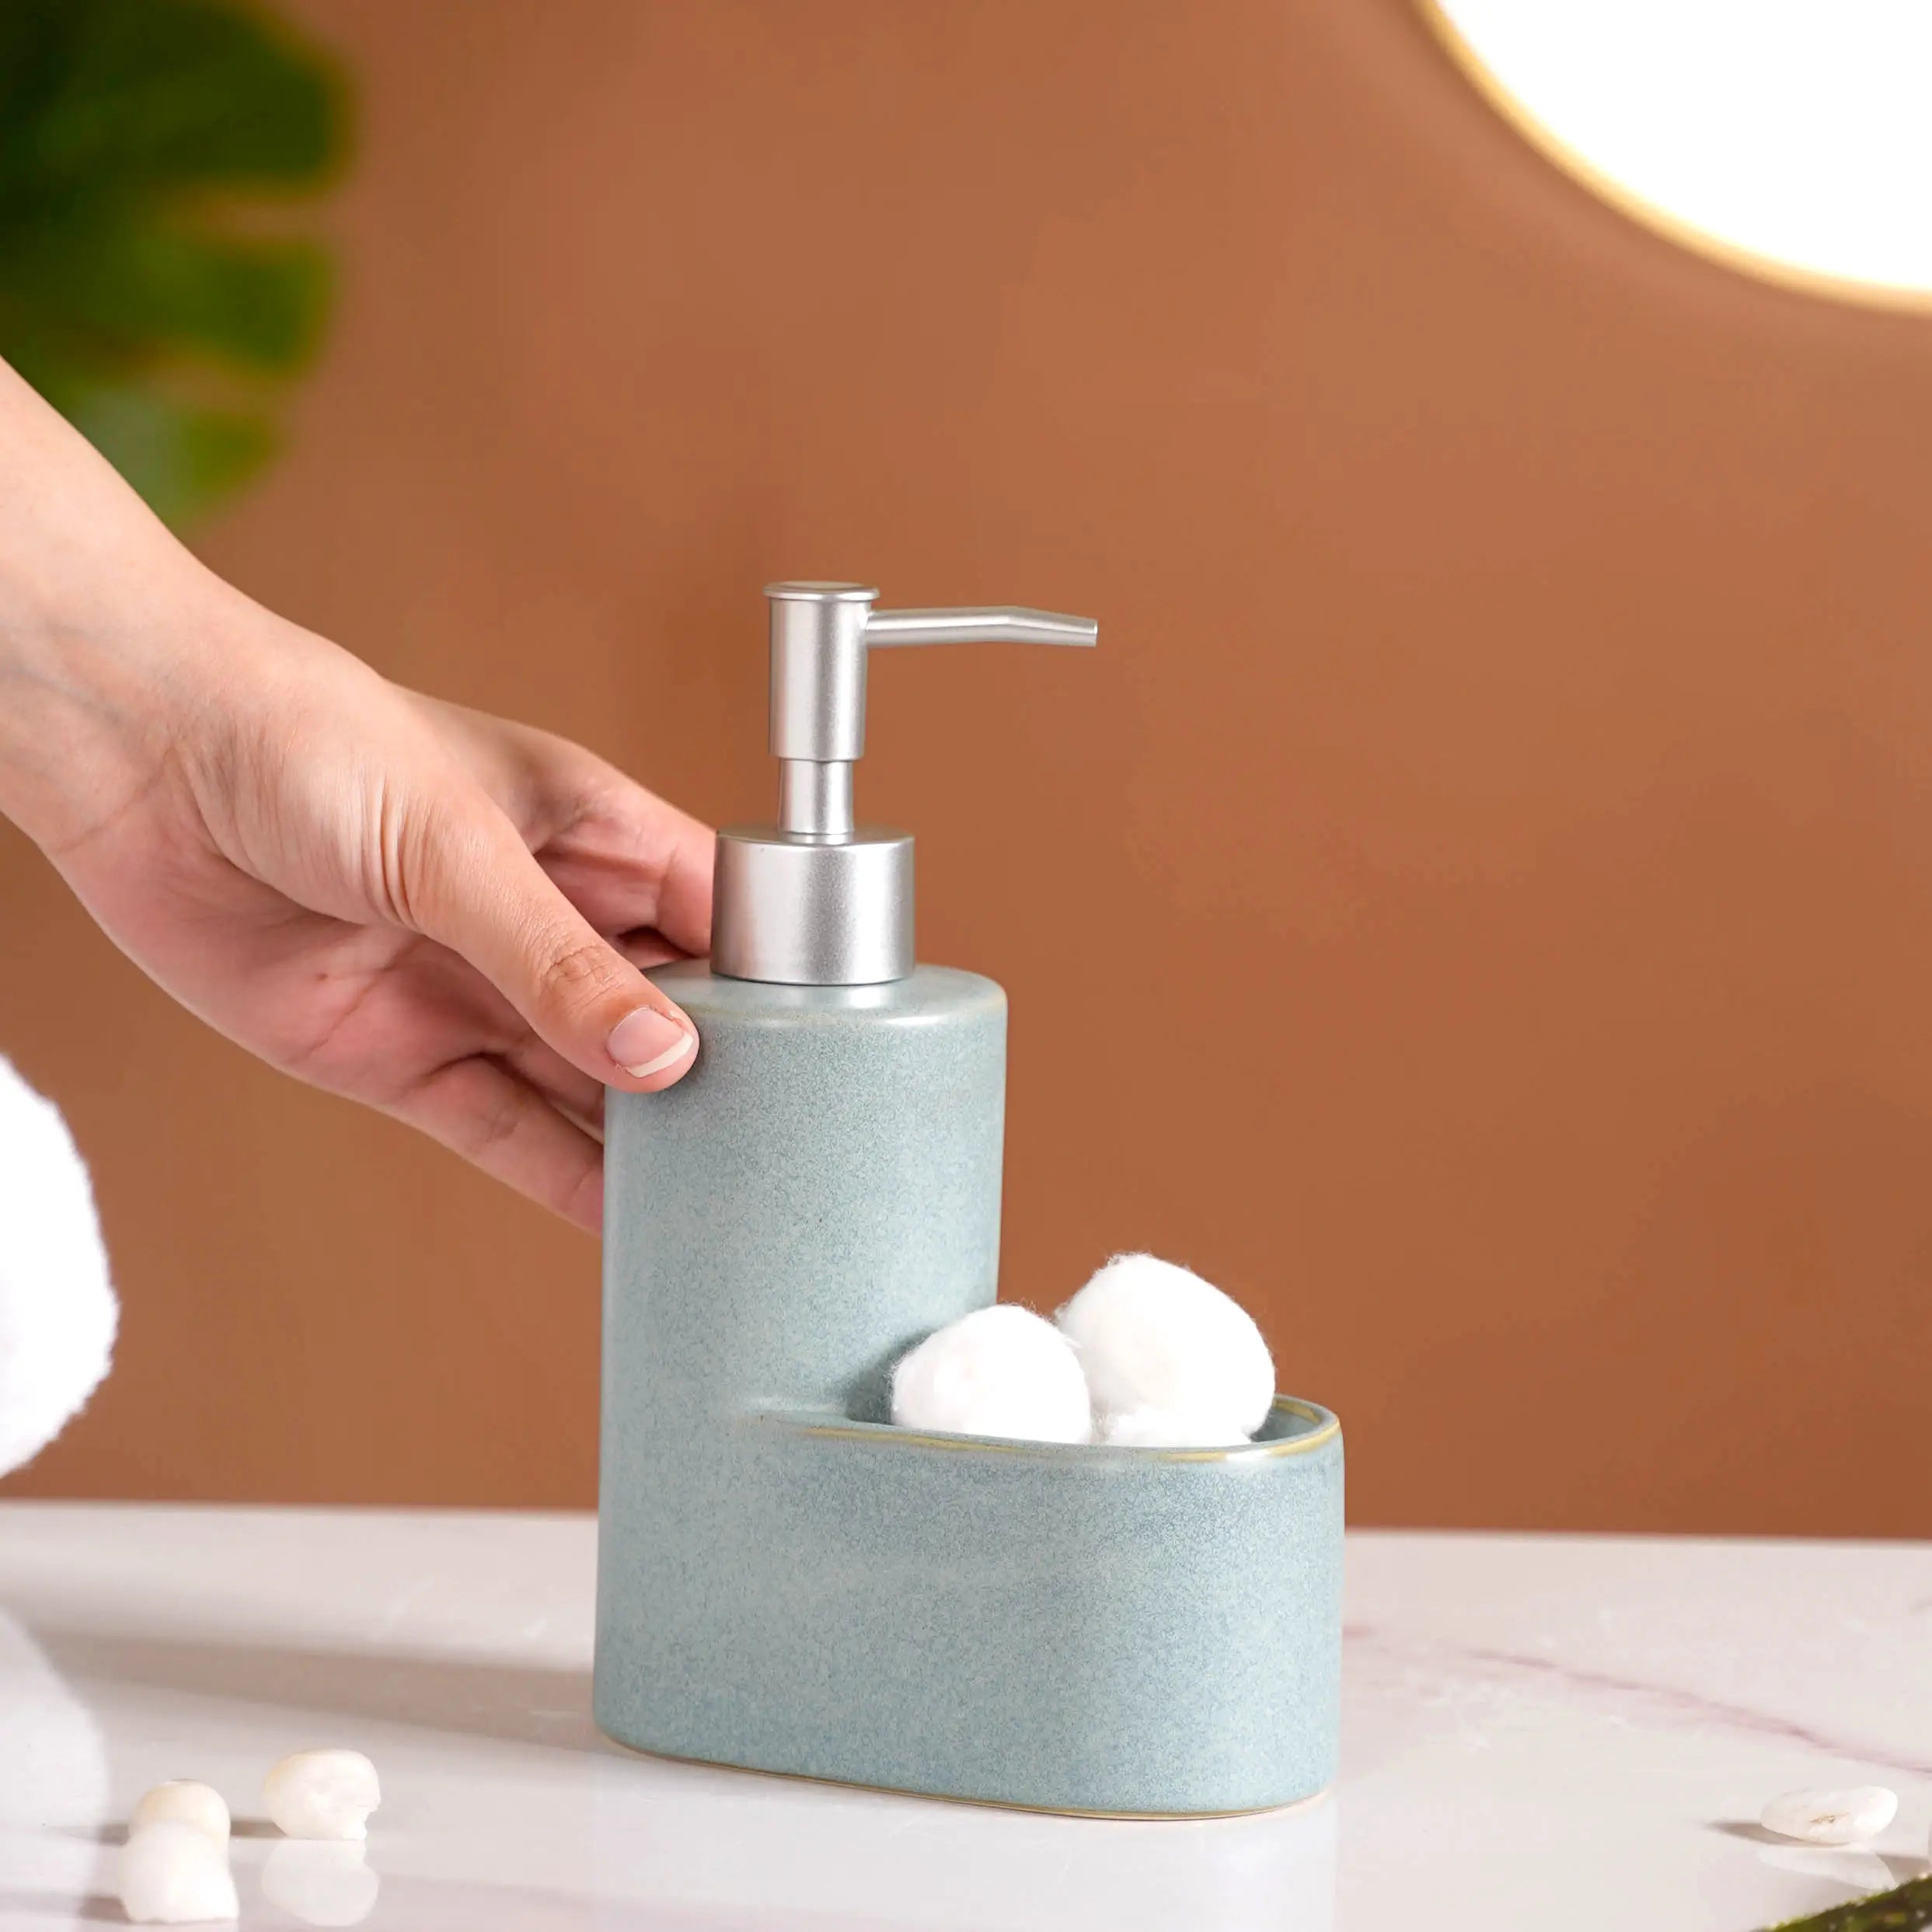 Dispenser - Buy Bathroom Soap Dispenser Online